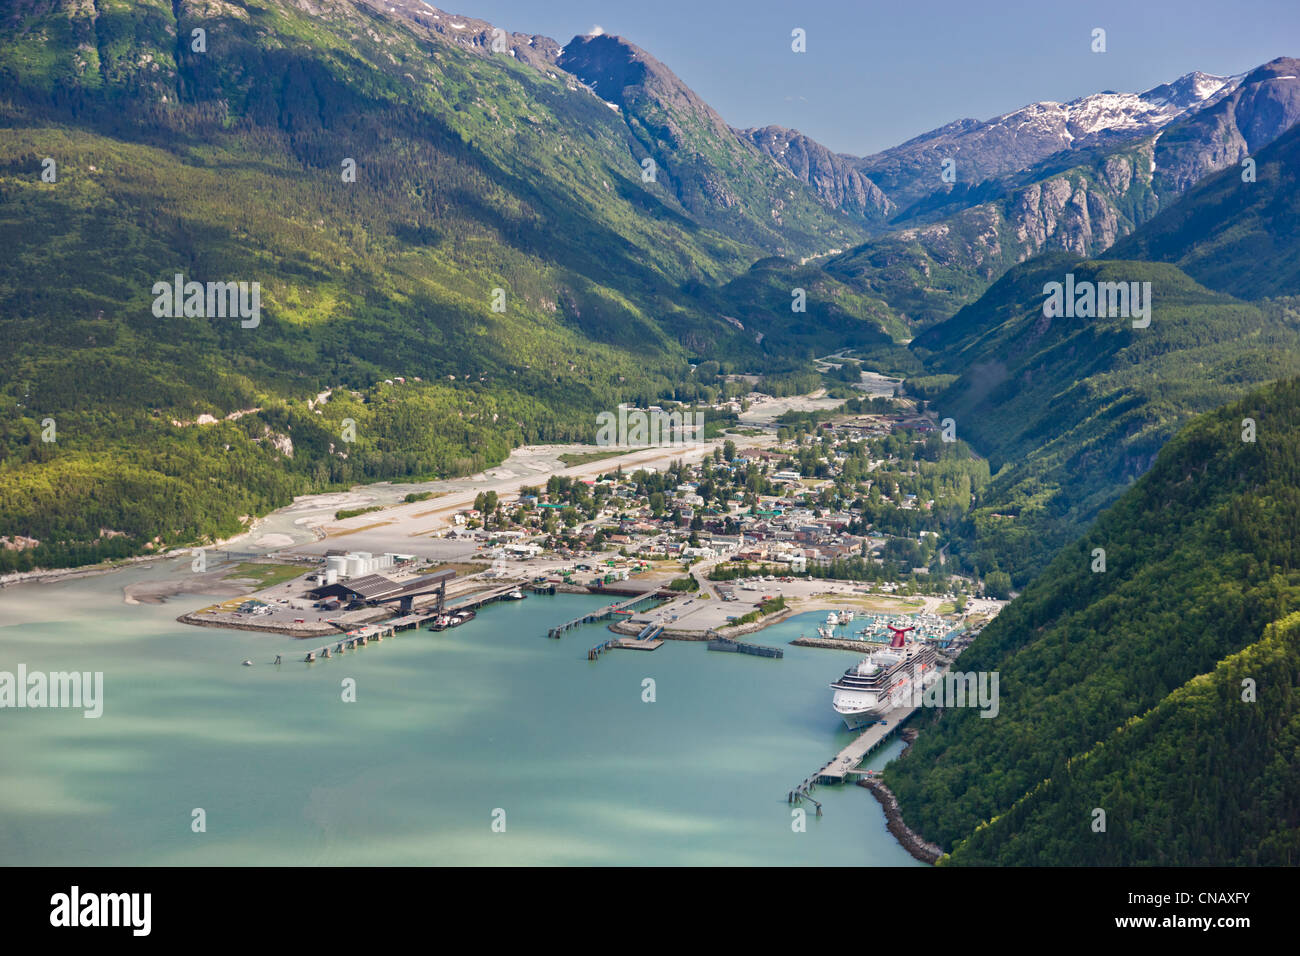 Vista aerea della città di Skagway con una nave da crociera ormeggiata al porto, a sud-est di Alaska, estate Foto Stock